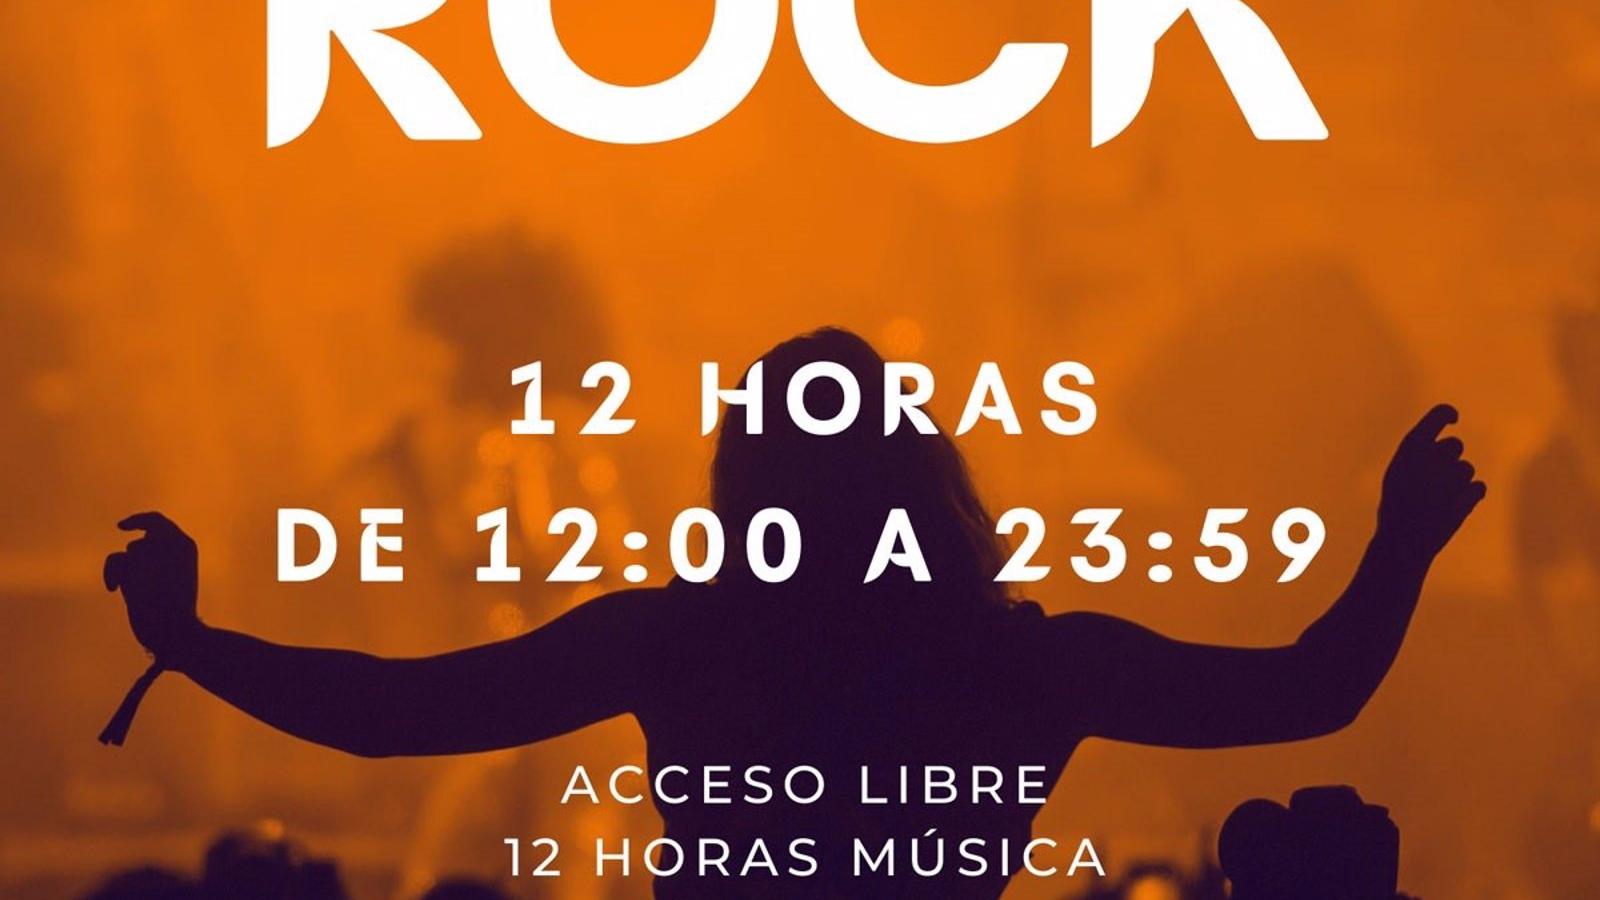 El Festival de Rock de Torrelodones vuelve el 25 de junio para dar a conocer a los artistas de la zona